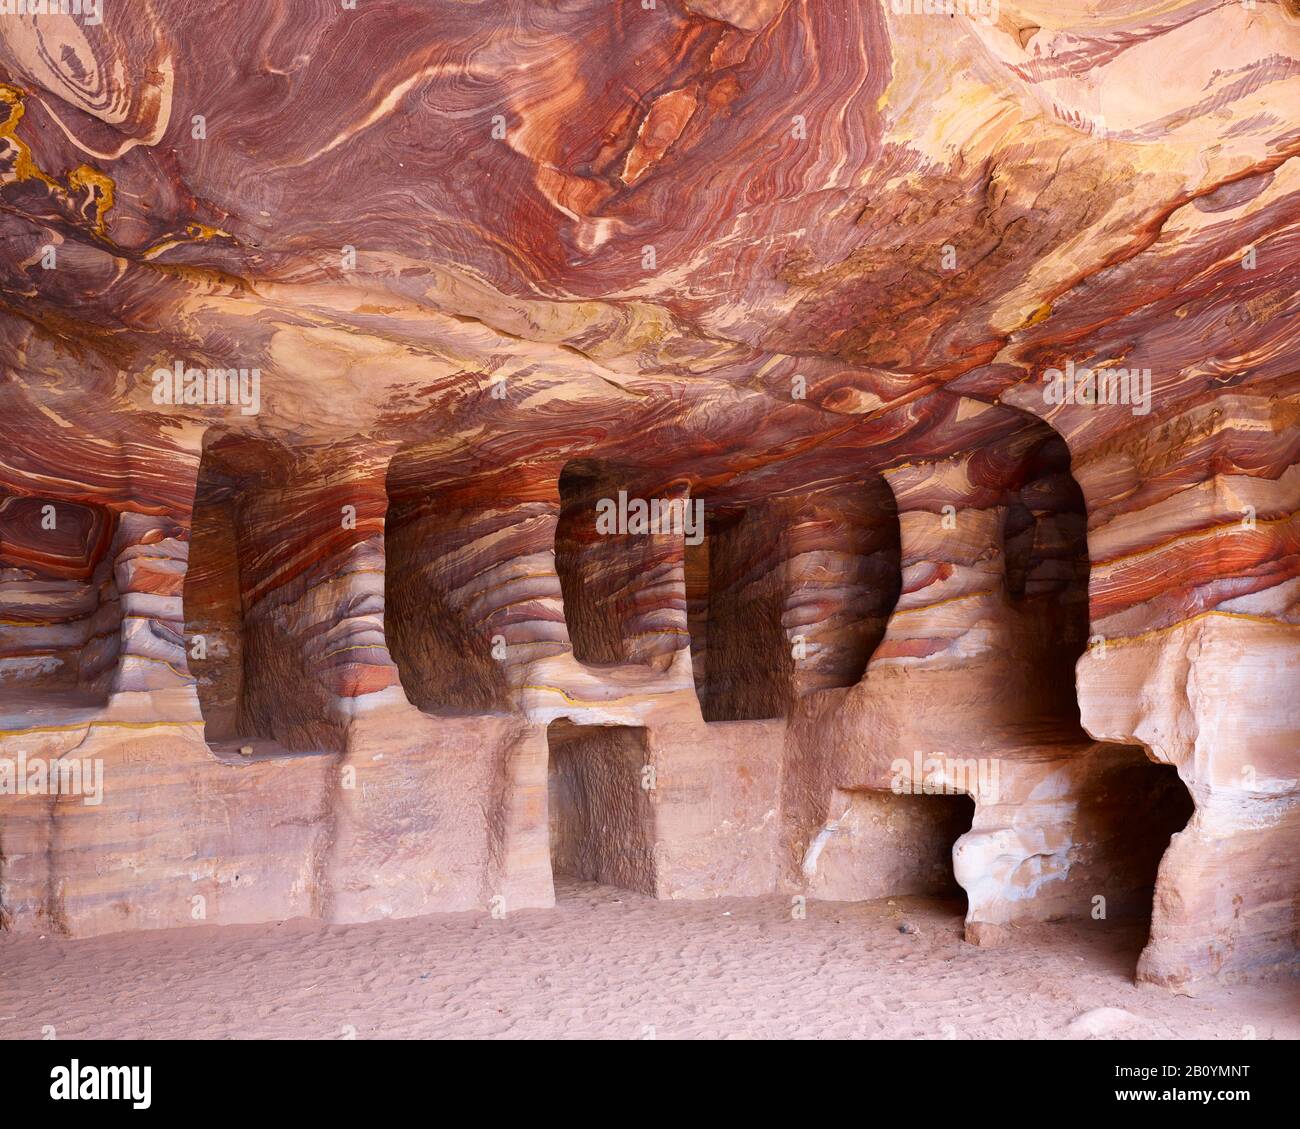 Estructura rocosa con nichos graves en la ciudad rocosa de Petra, Jordania, Oriente Medio, Foto de stock